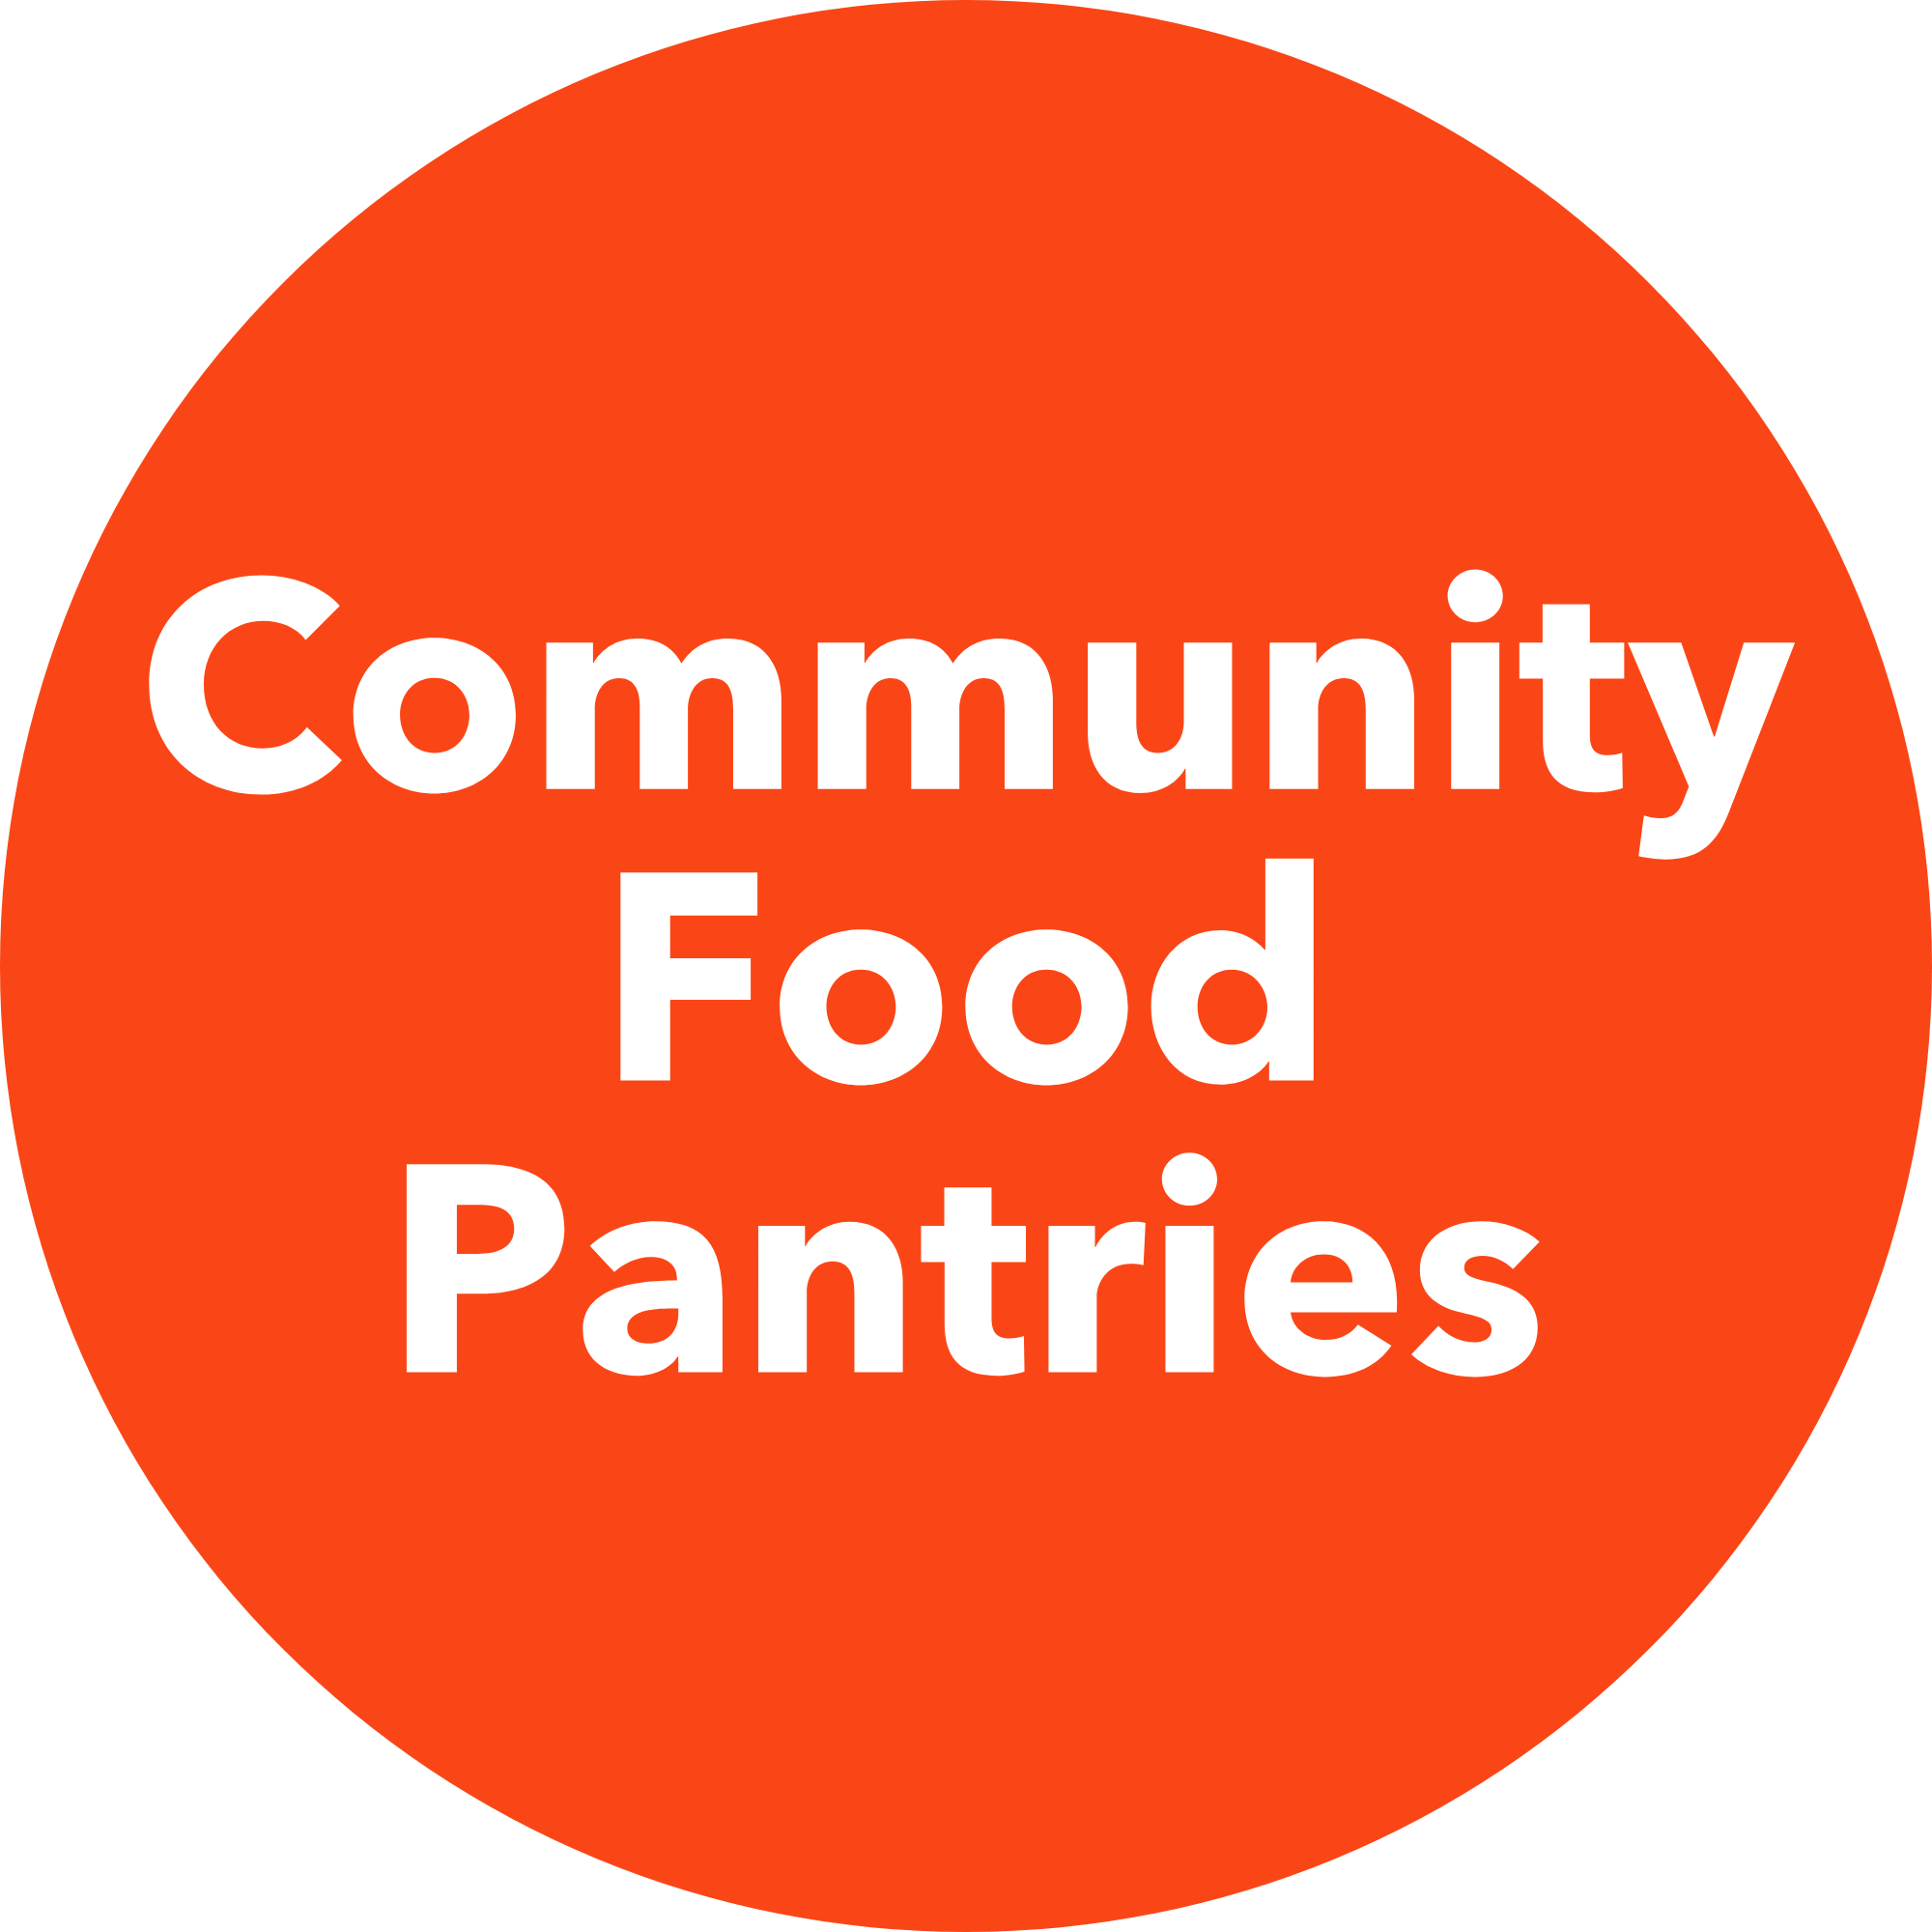 Community Food Pantries